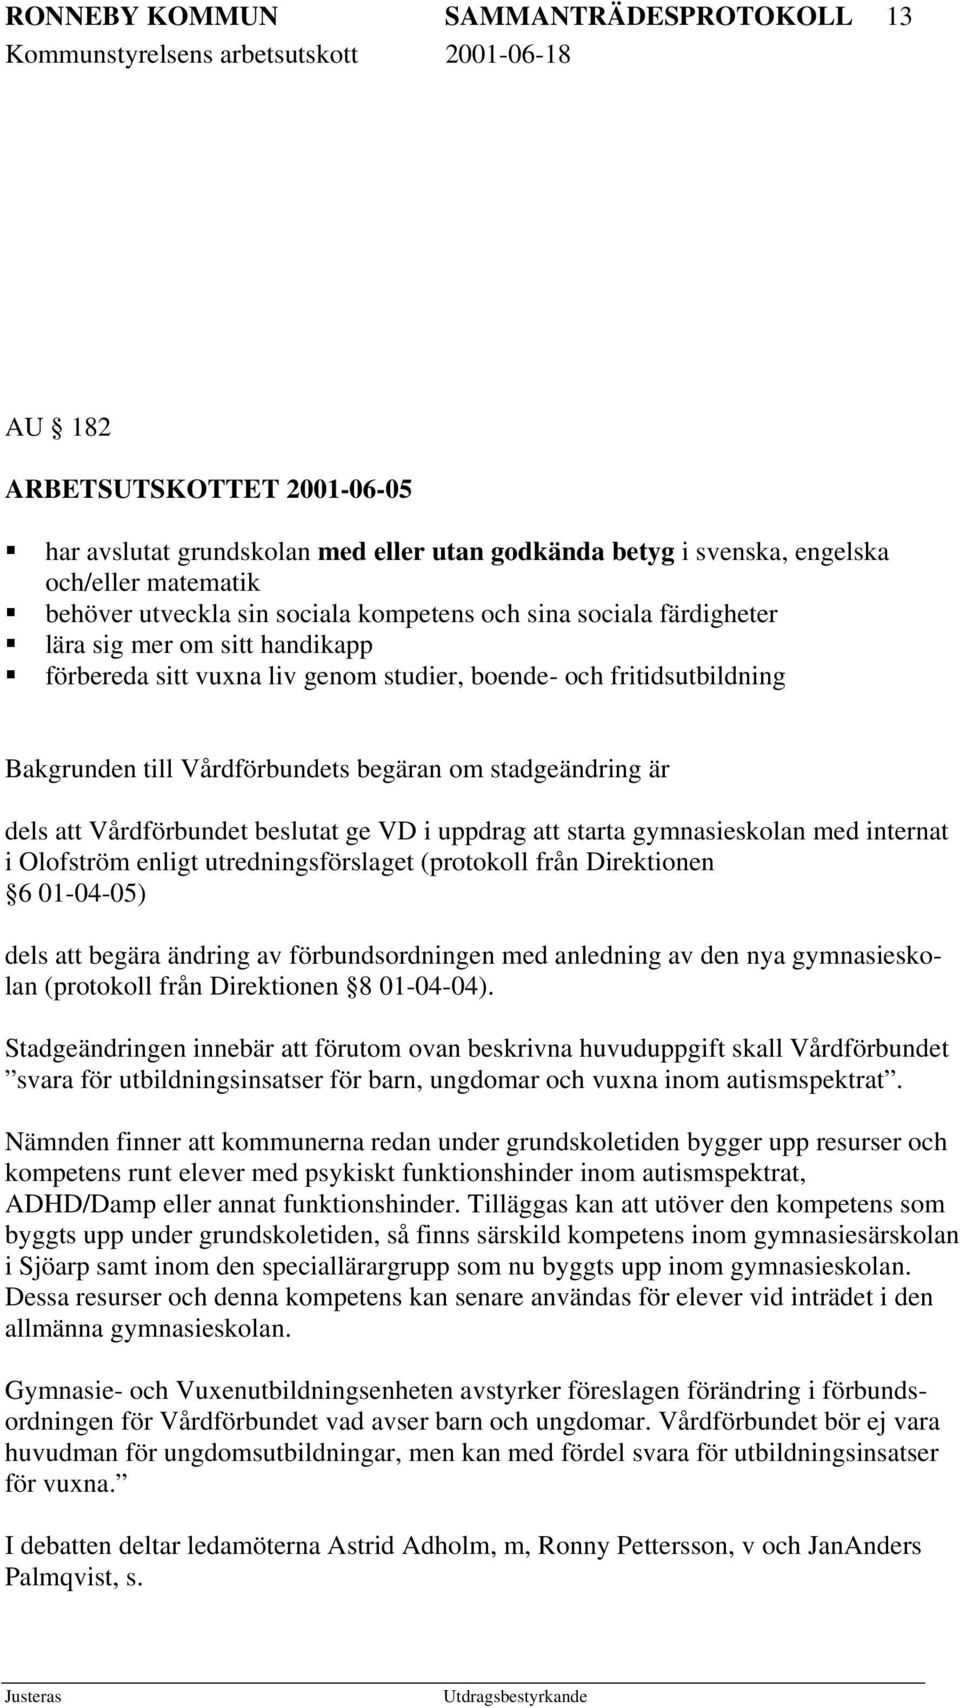 dels att Vårdförbundet beslutat ge VD i uppdrag att starta gymnasieskolan med internat i Olofström enligt utredningsförslaget (protokoll från Direktionen 6 01-04-05) dels att begära ändring av